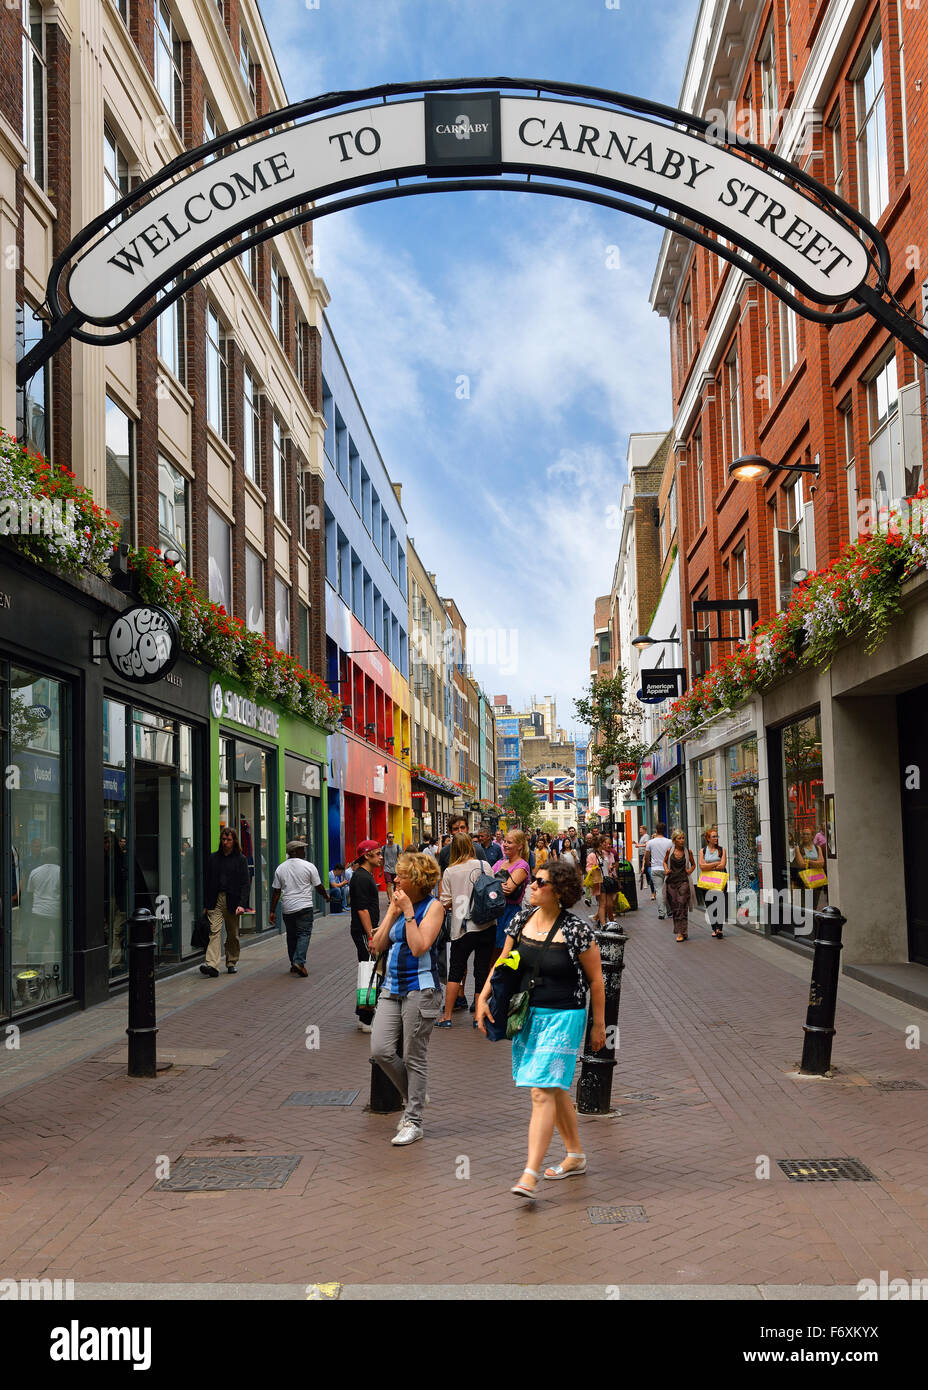 Carnaby Street, Soho, Londra, Inghilterra, Regno Unito. Foto Stock